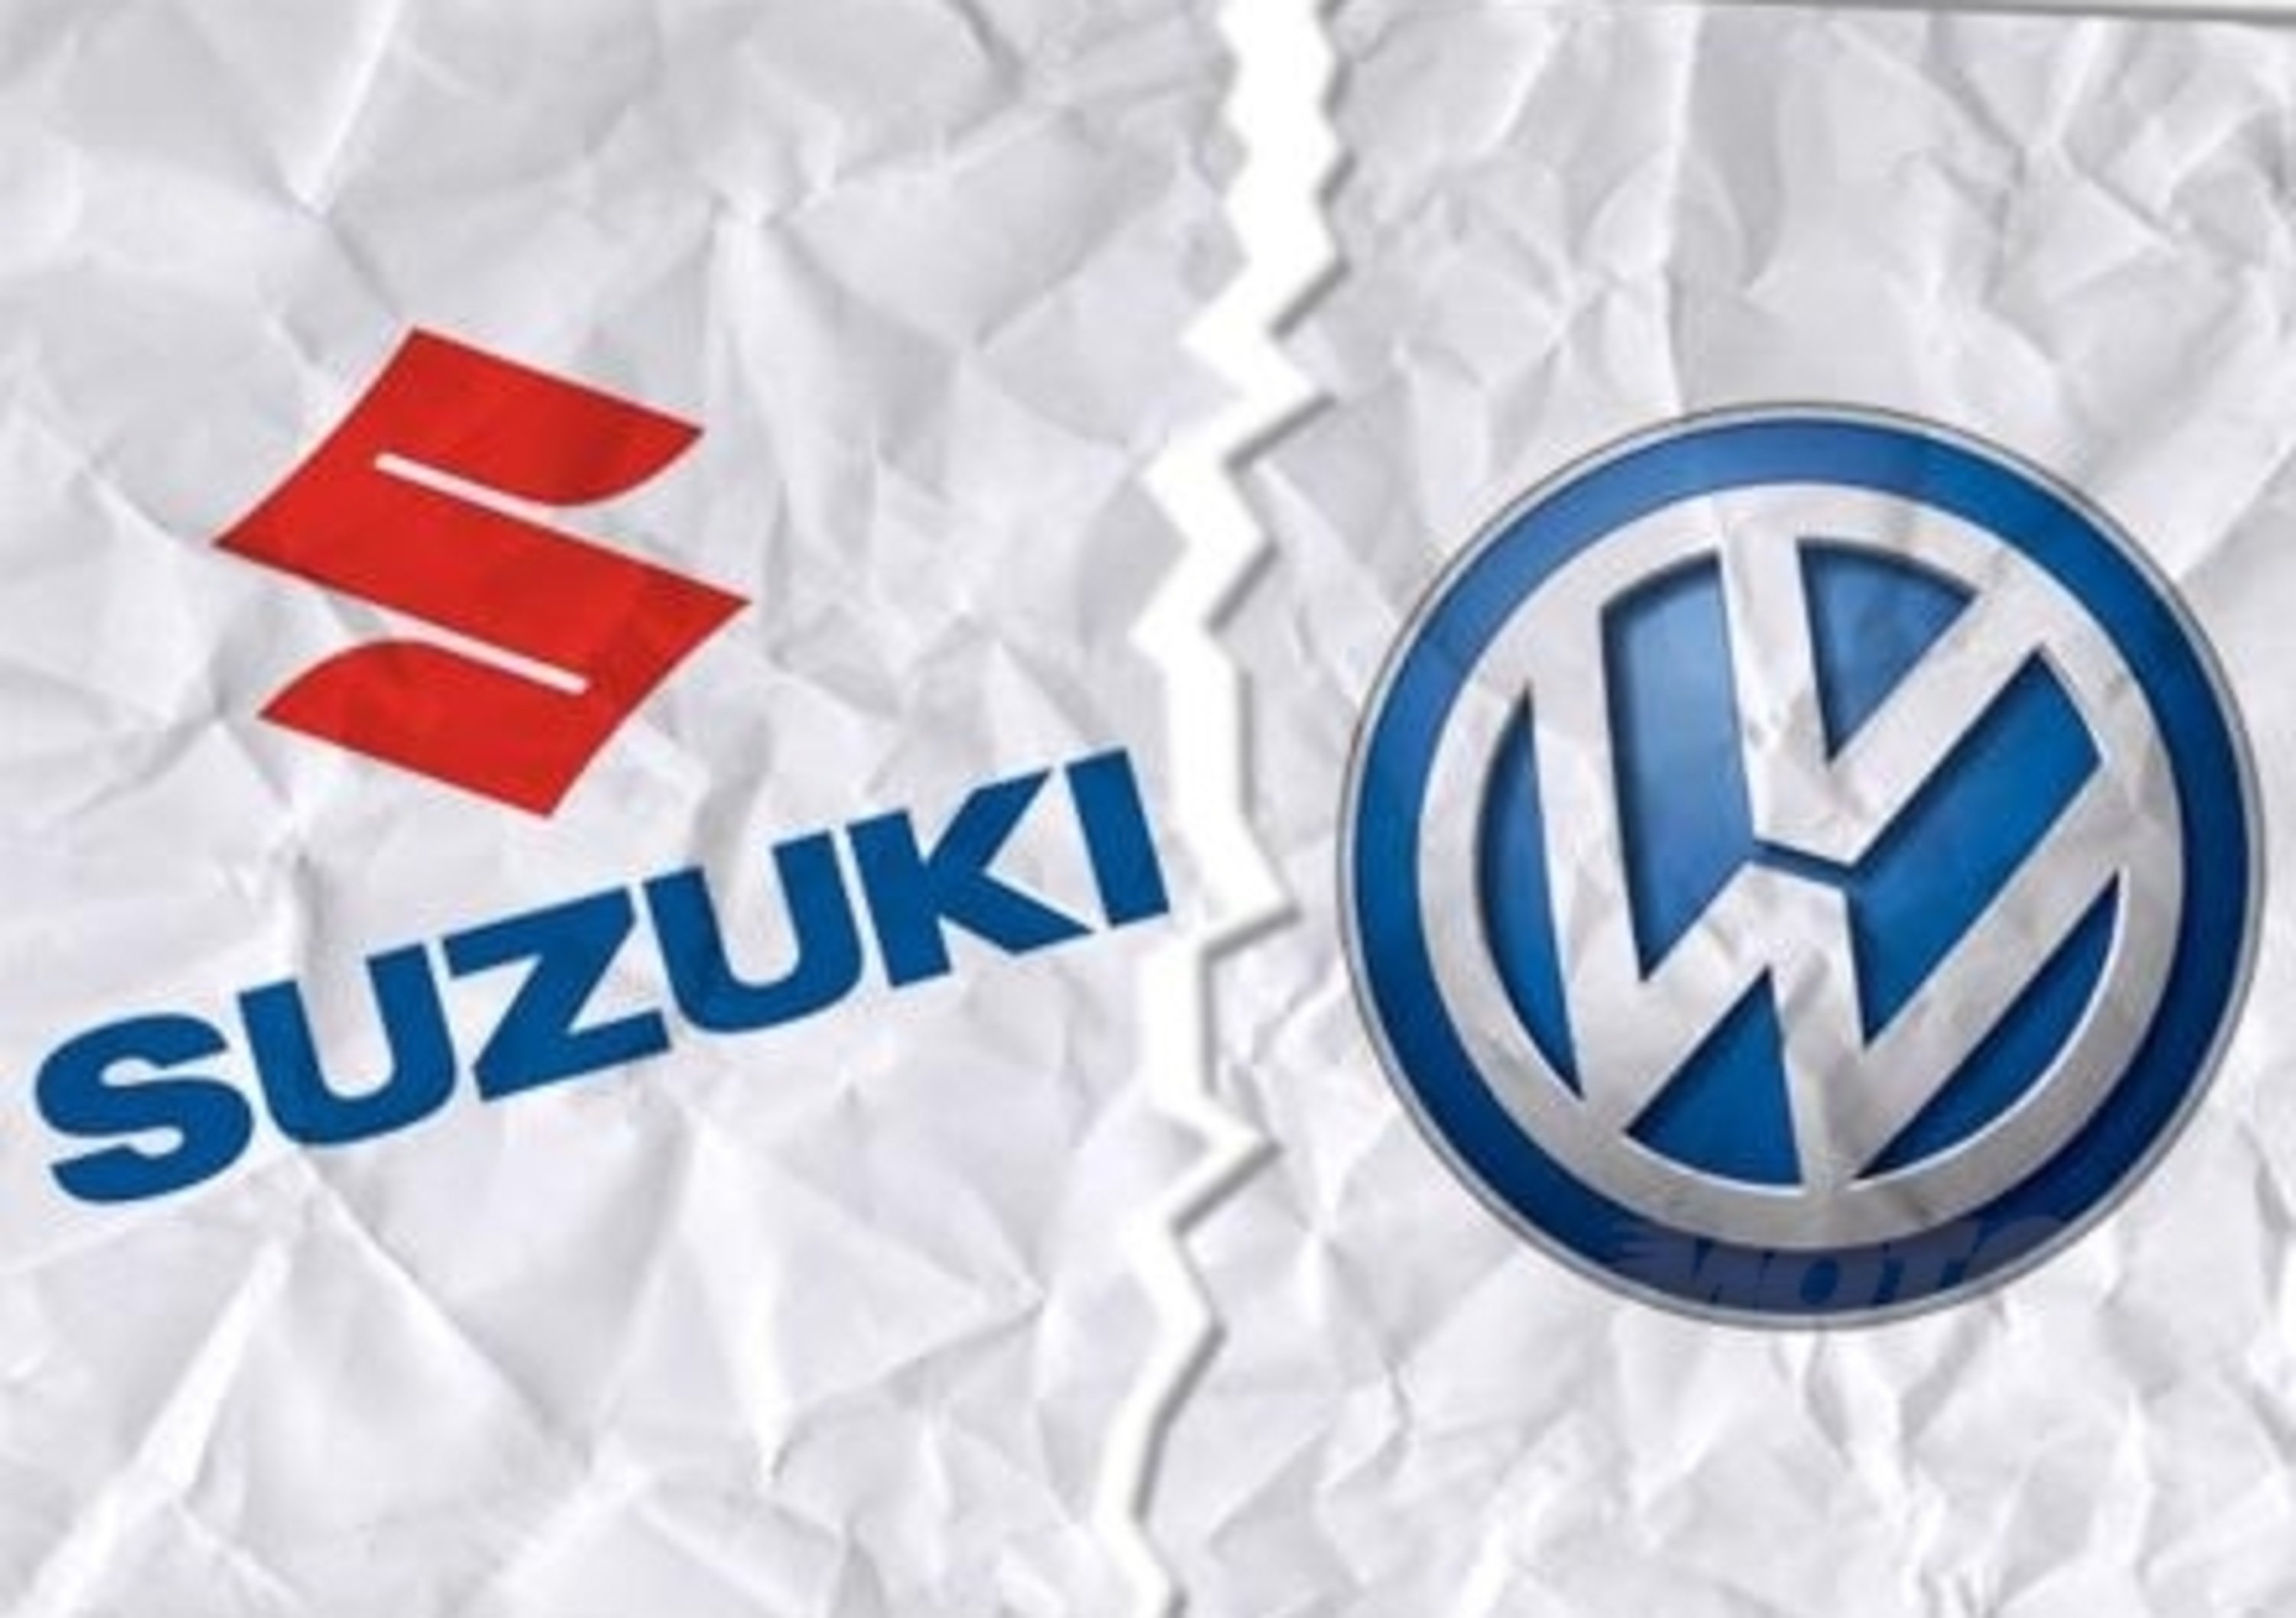 Suzuki divorzia da Volkswagen